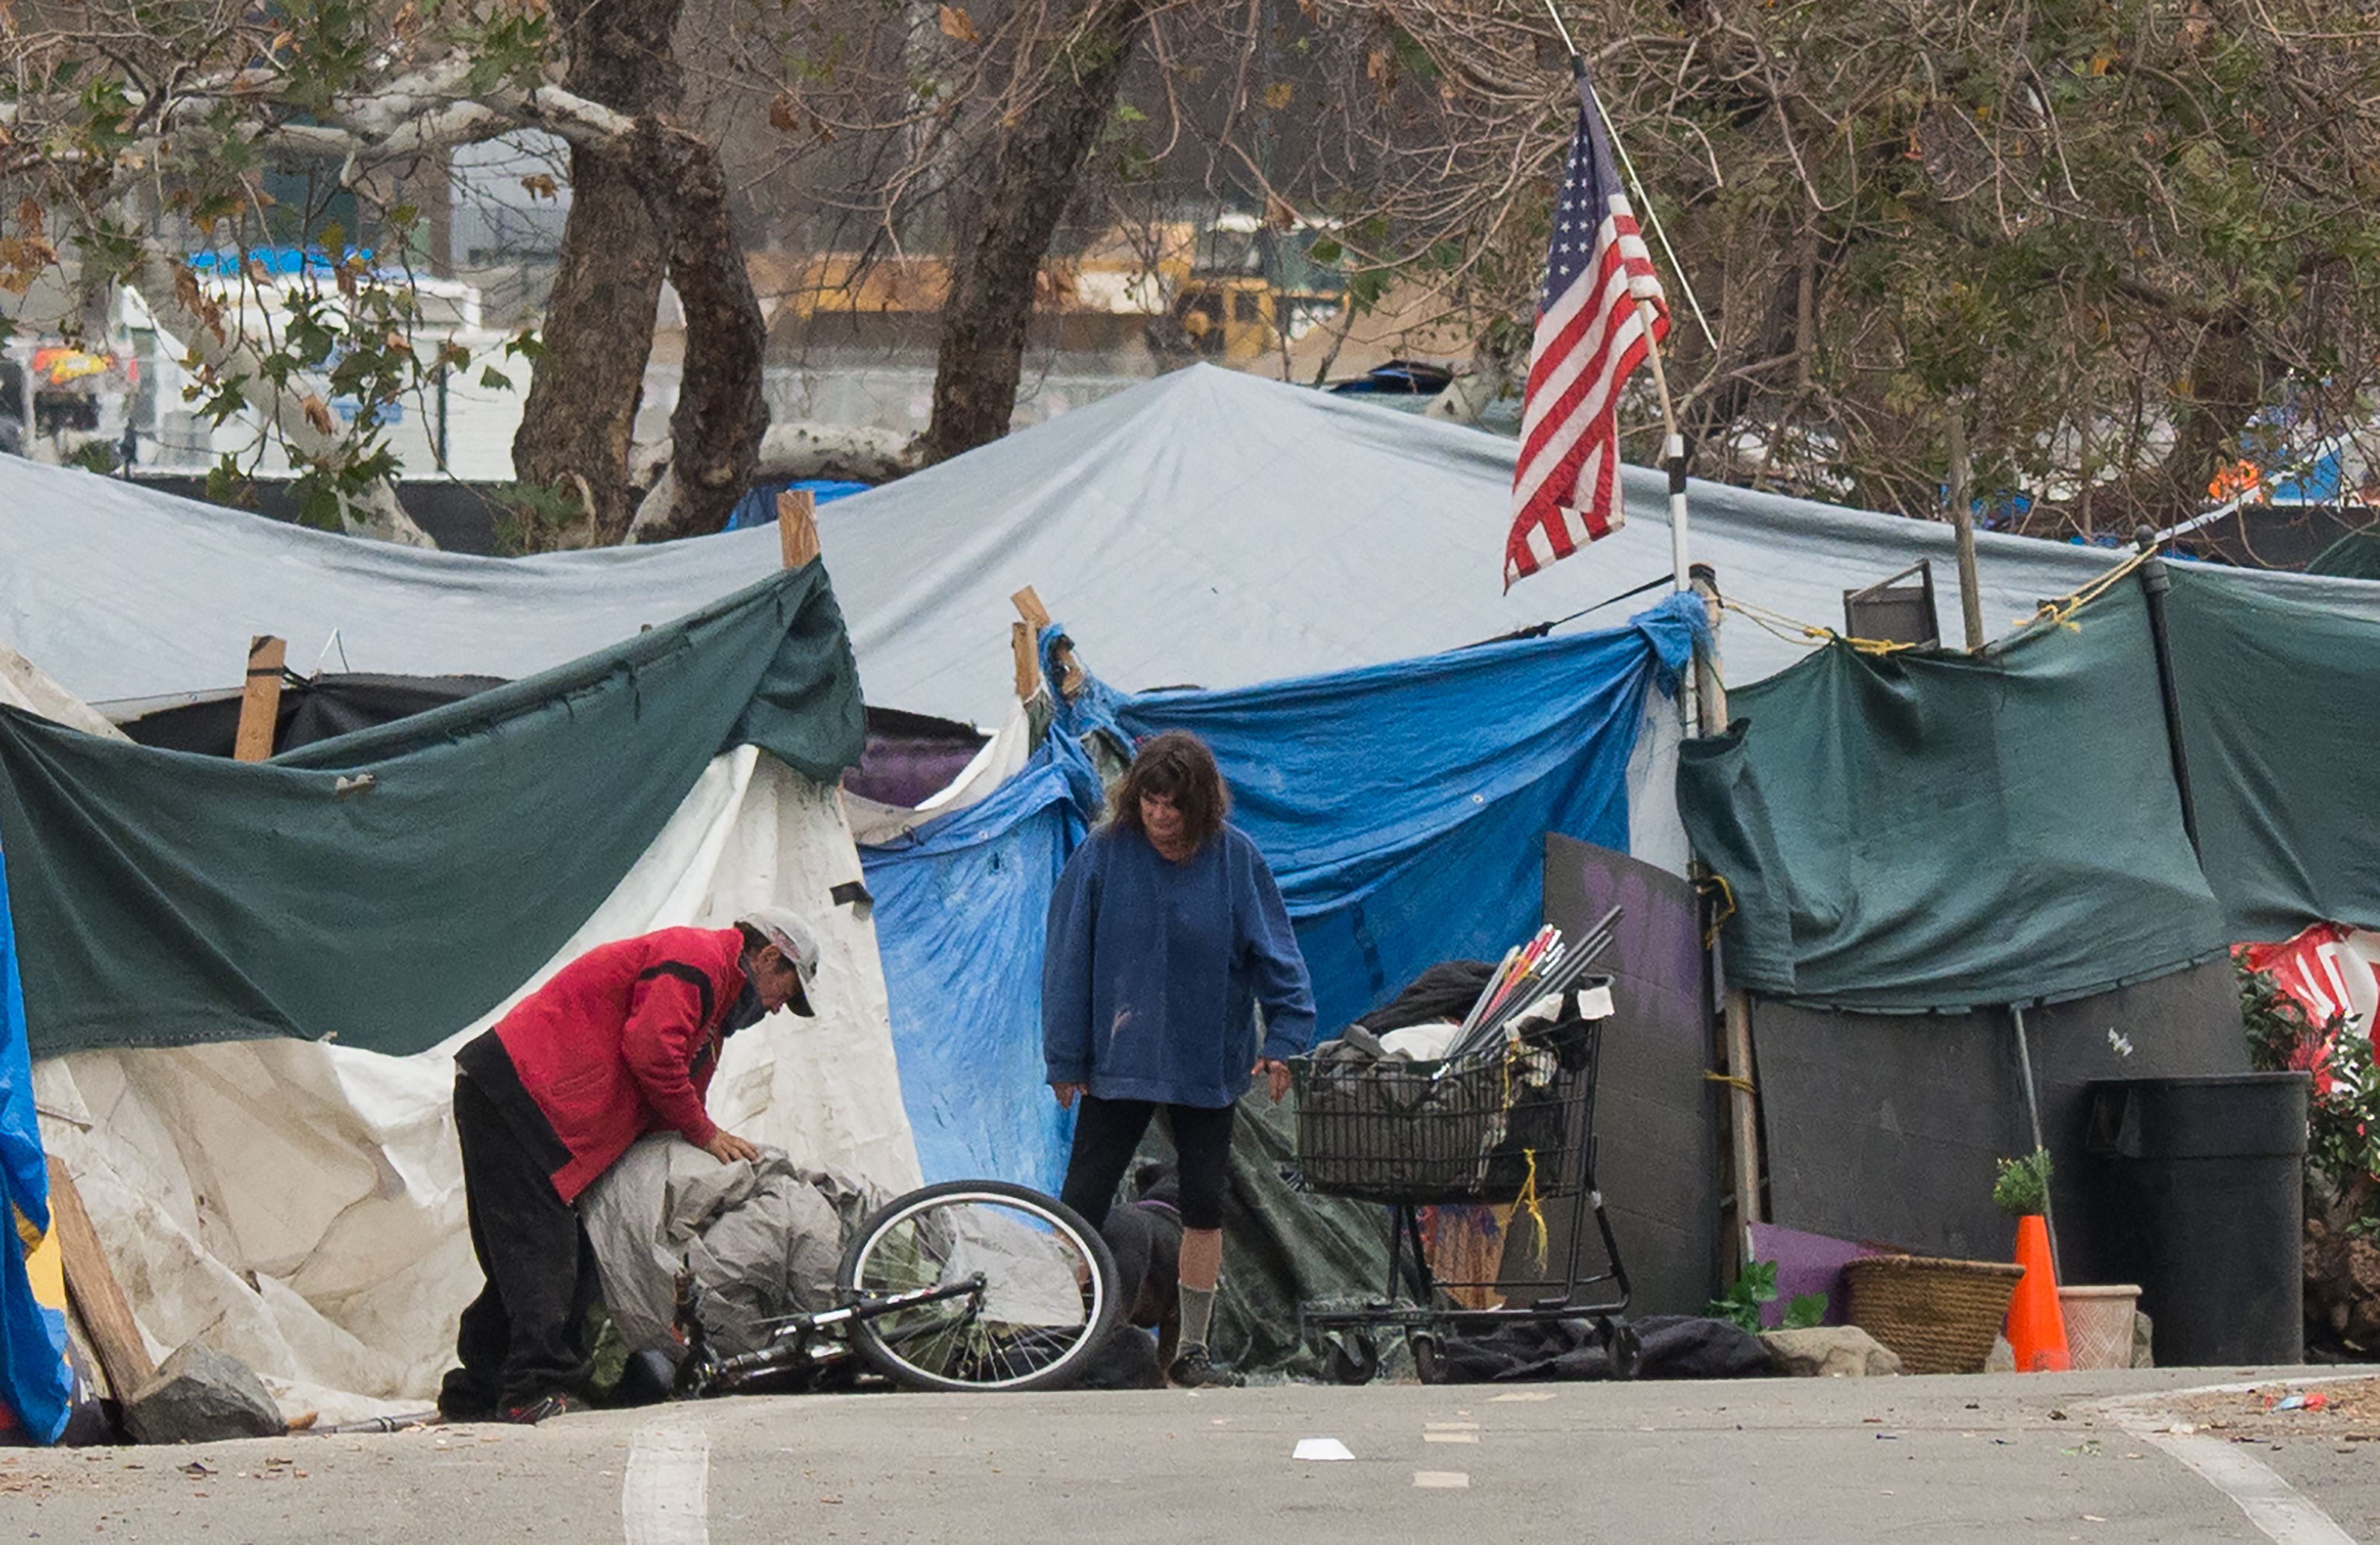 Страна бомжей. Палатки бездомных в Лос-Анджелесе с флагом США.